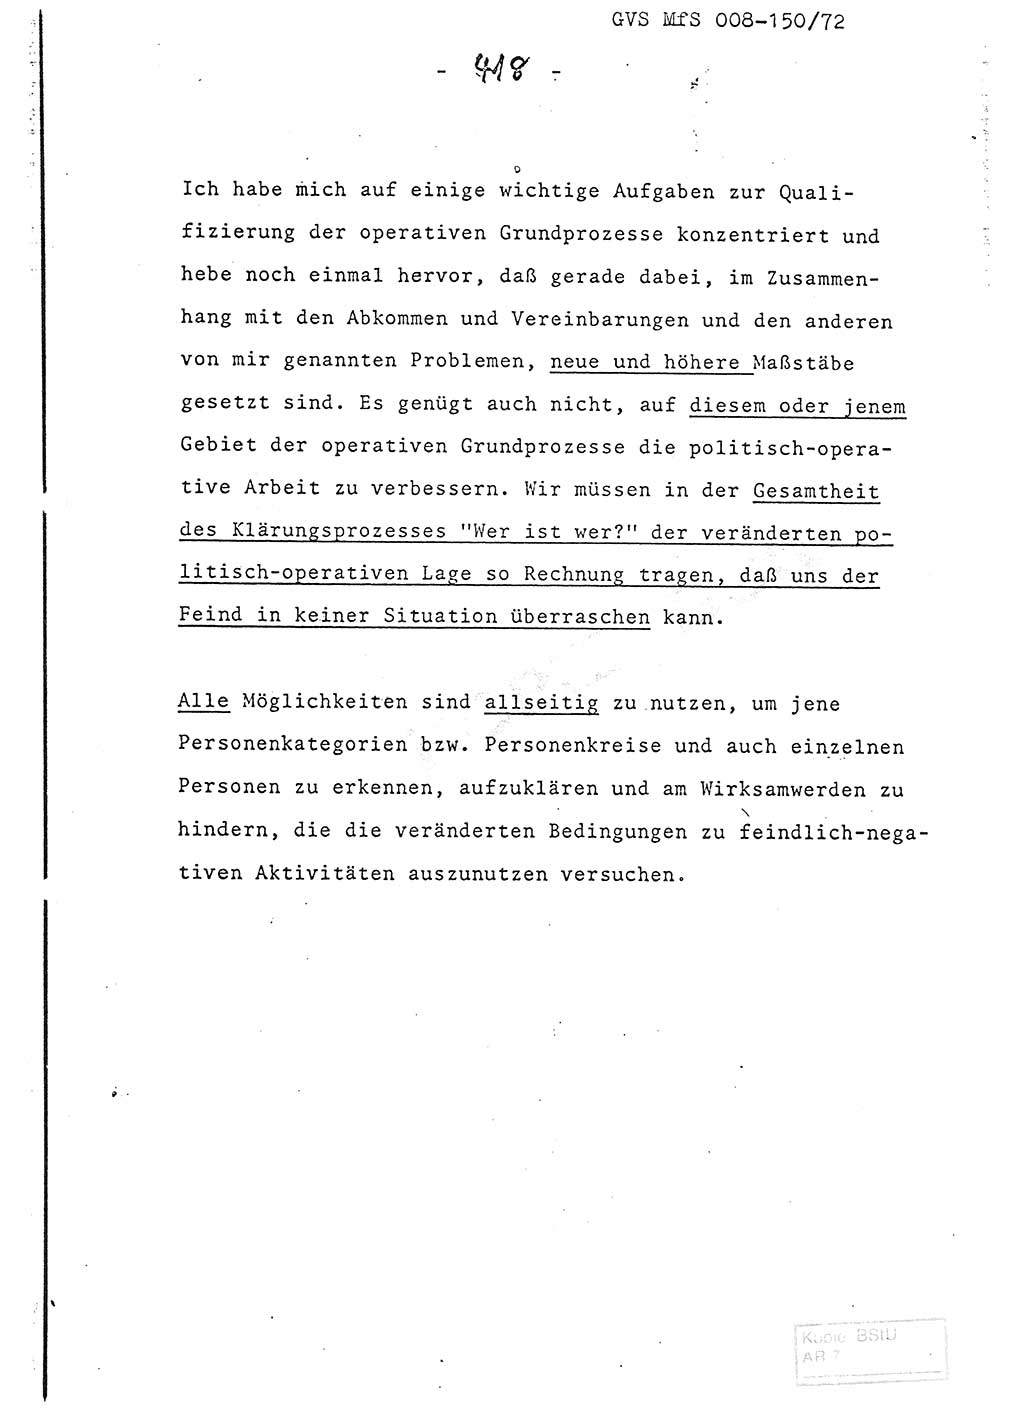 Referat (Entwurf) des Genossen Minister (Generaloberst Erich Mielke) auf der Dienstkonferenz 1972, Ministerium für Staatssicherheit (MfS) [Deutsche Demokratische Republik (DDR)], Der Minister, Geheime Verschlußsache (GVS) 008-150/72, Berlin 25.2.1972, Seite 418 (Ref. Entw. DK MfS DDR Min. GVS 008-150/72 1972, S. 418)